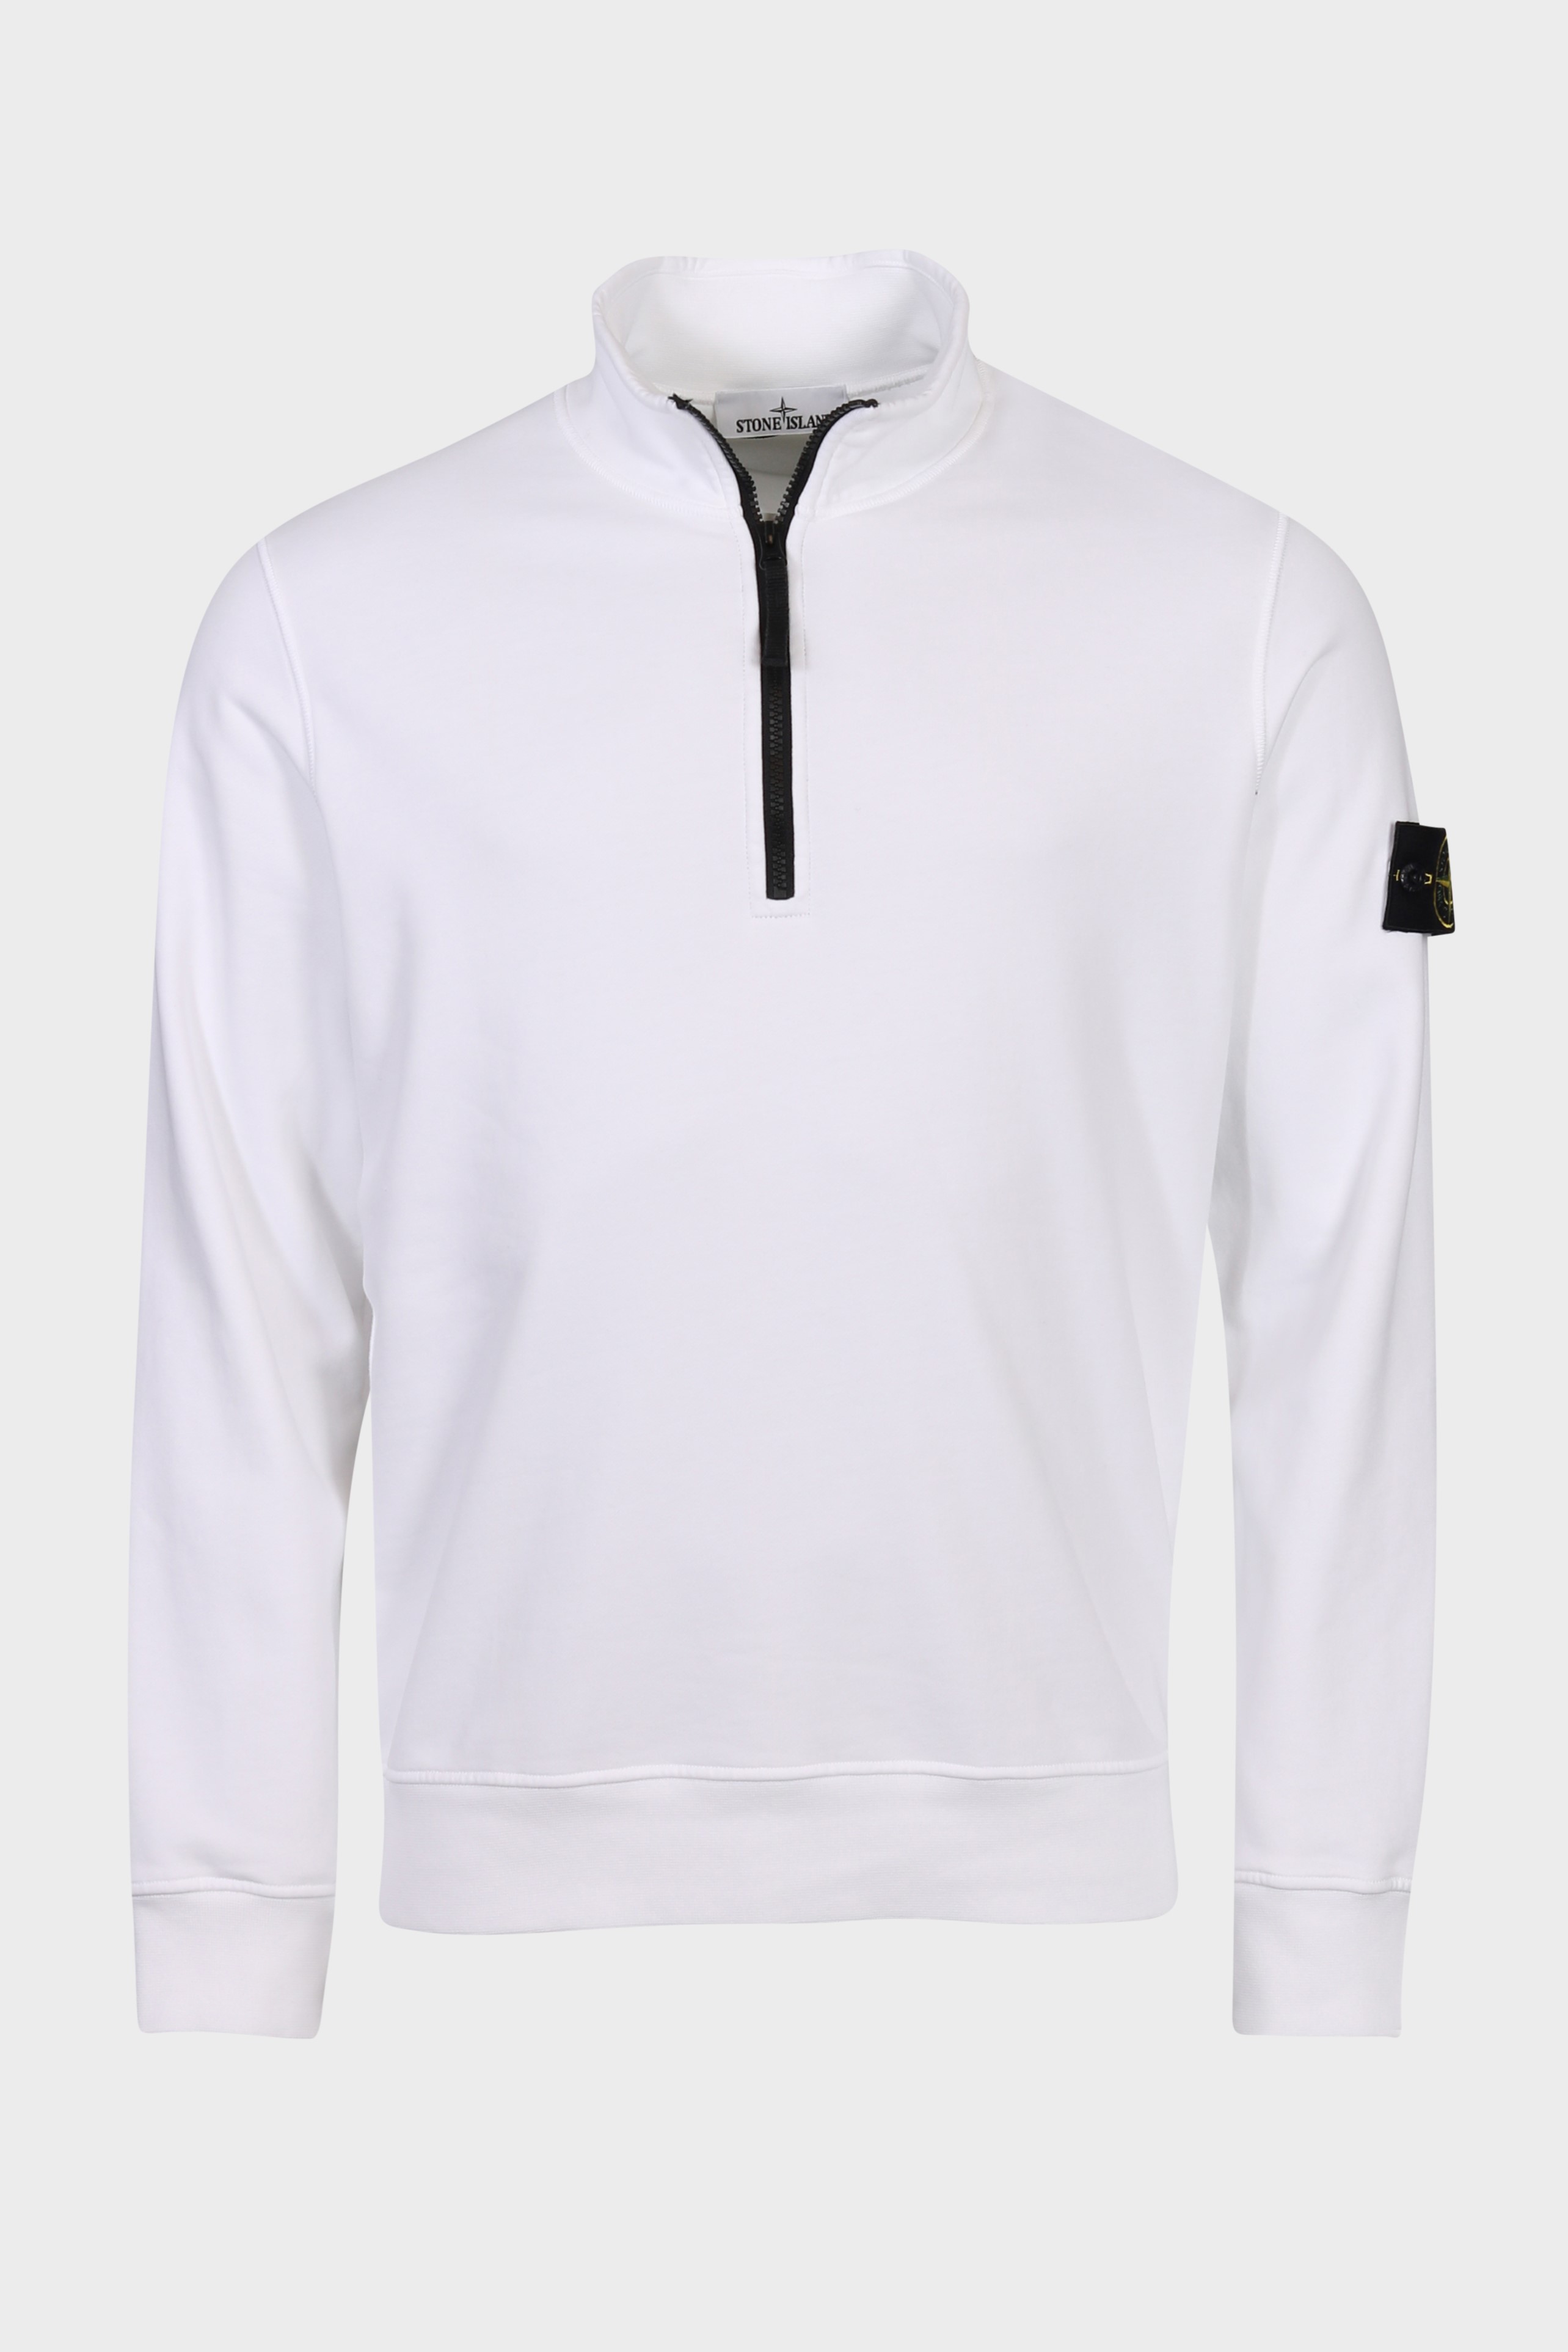 STONE ISLAND Half Zip Sweatshirt in White